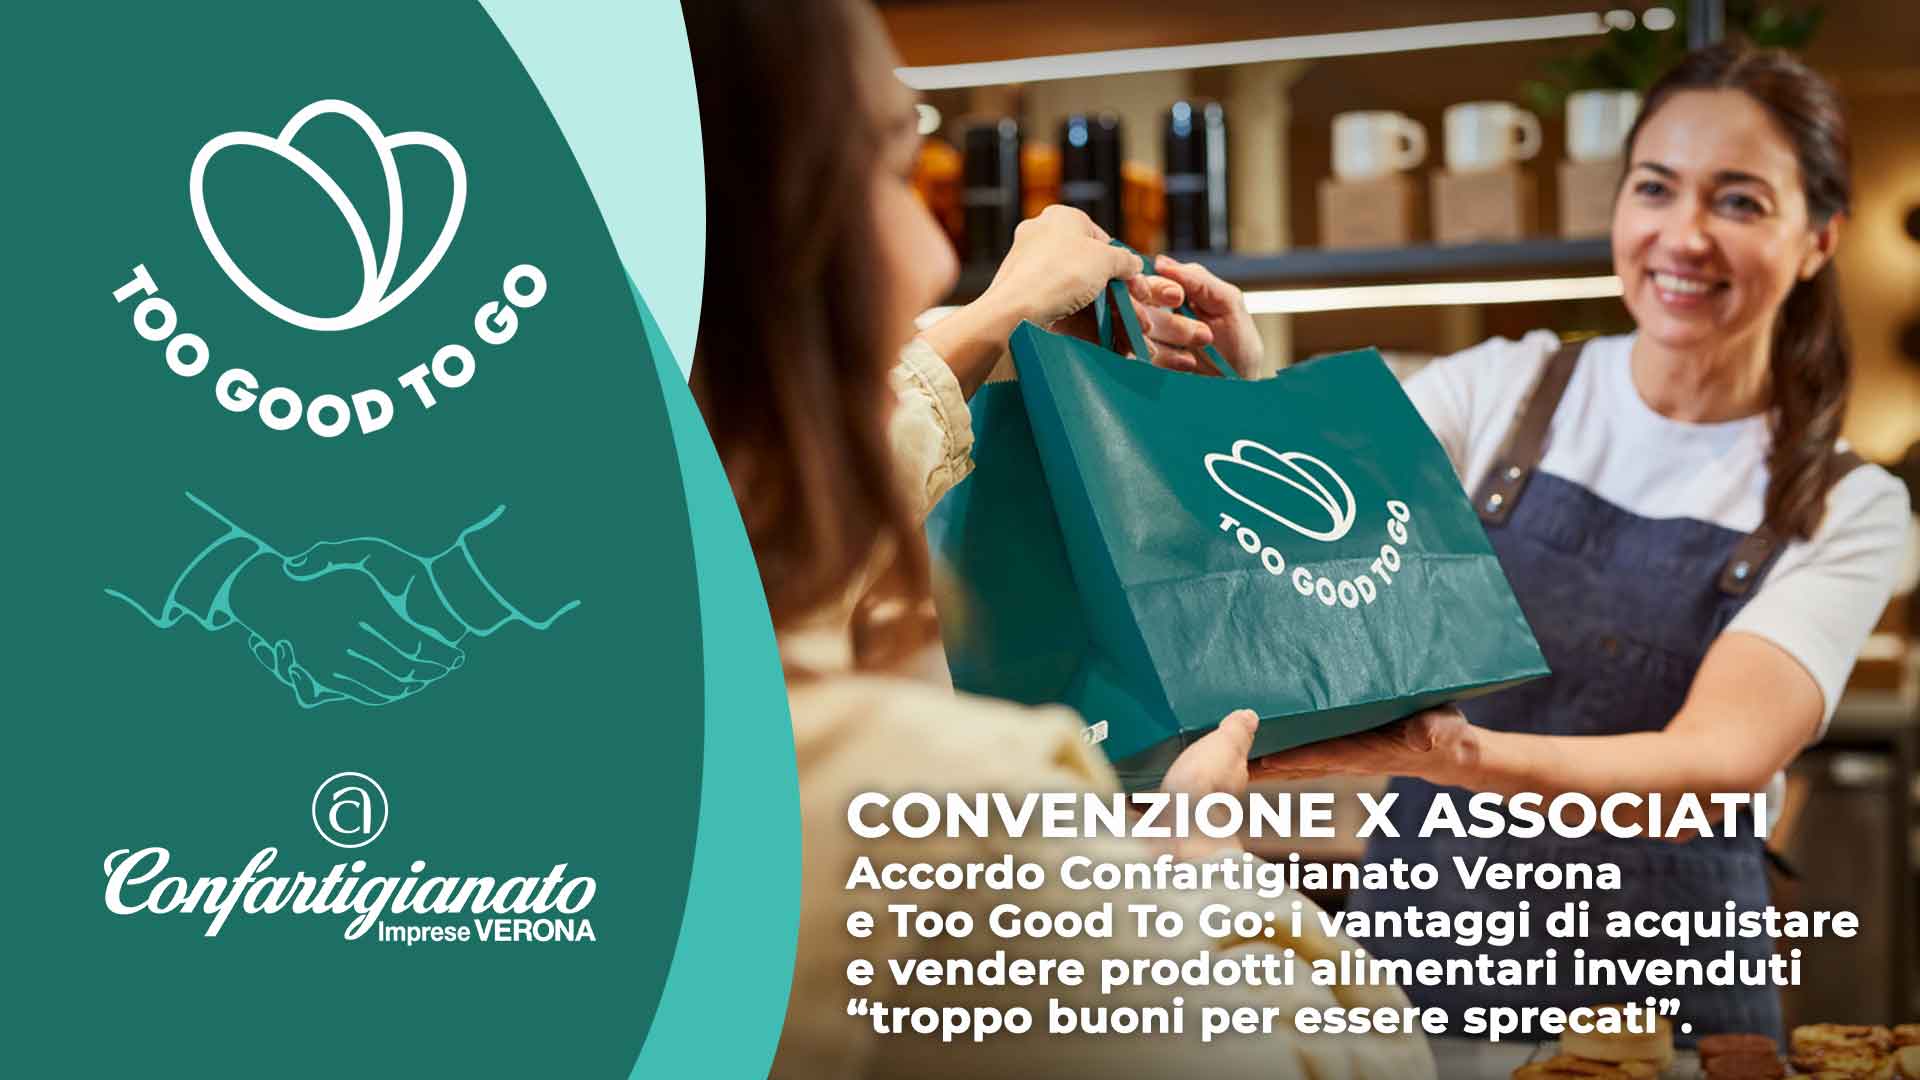 CONVENZIONI – Accordo Confartigianato Verona e Too Good To Go: i vantaggi di acquistare e vendere prodotti invenduti “troppo buoni per essere sprecati”. Contattaci